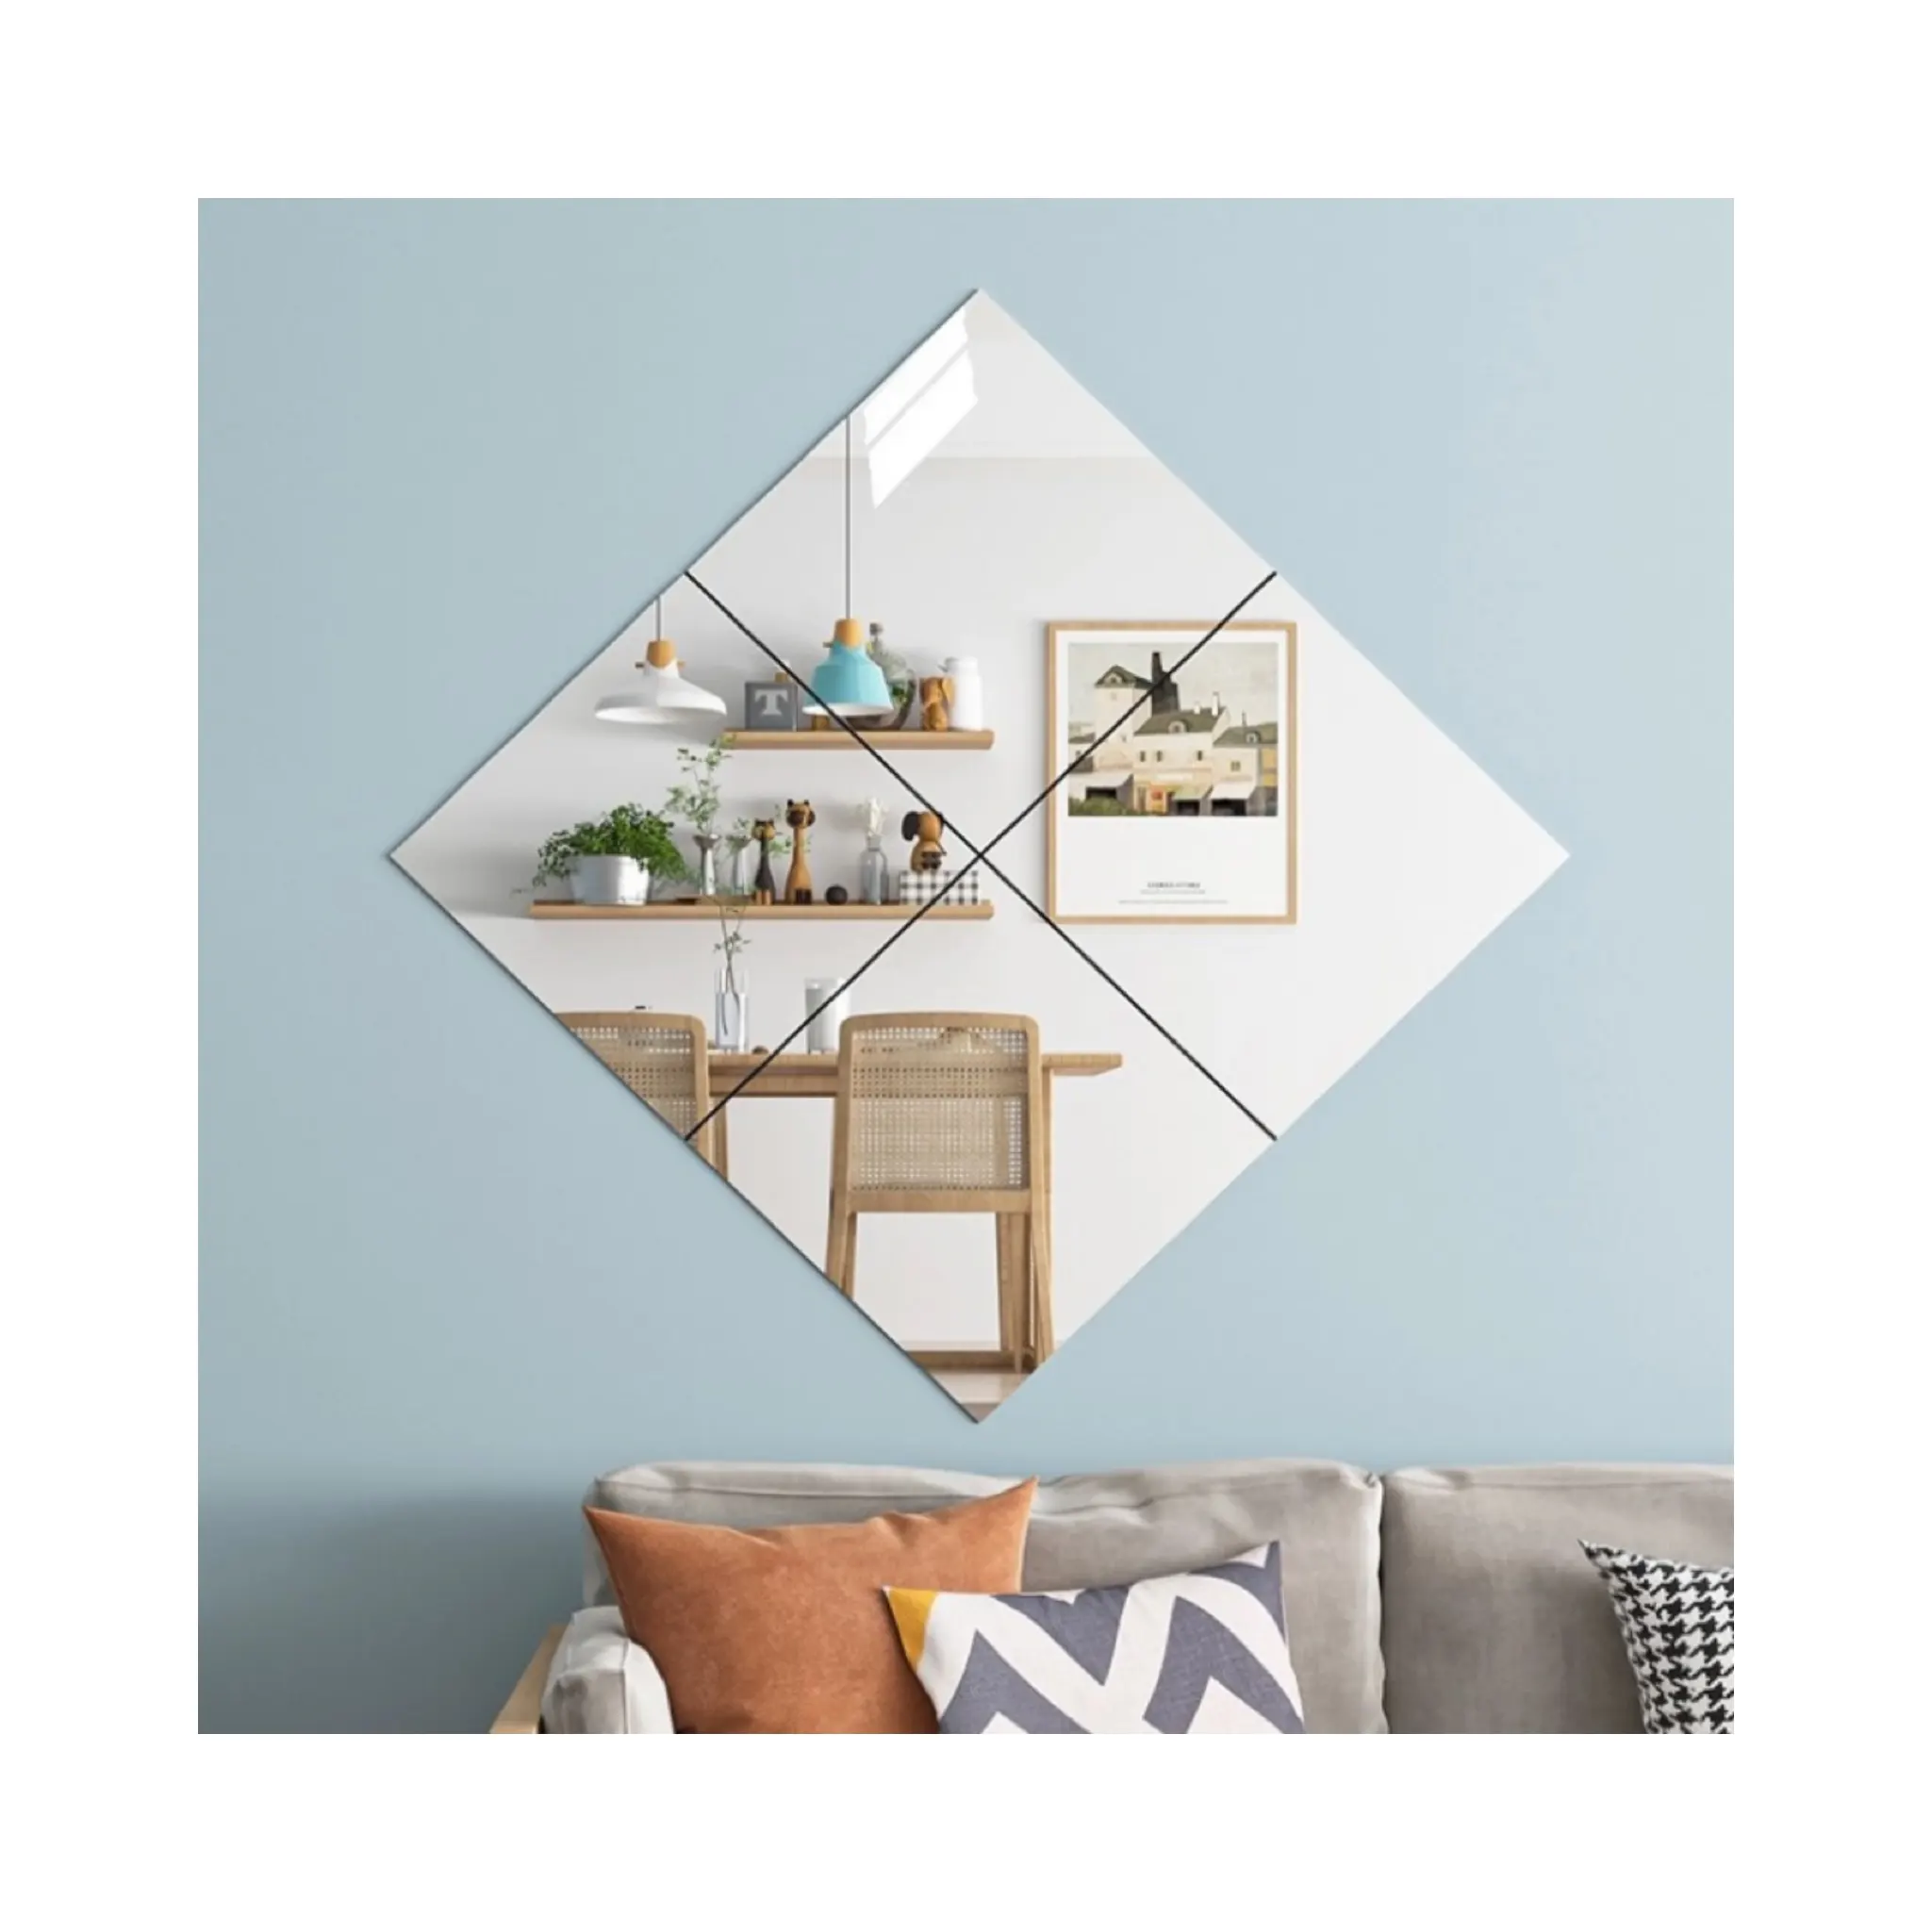 Schlussverkauf Innengefäß-Wand-Aufkleber aus Glas Badverkleidungsspiegel Aufkleber Kunststoff-Papierspiegel selbstklebender benutzerdefinierter Wandspiegel